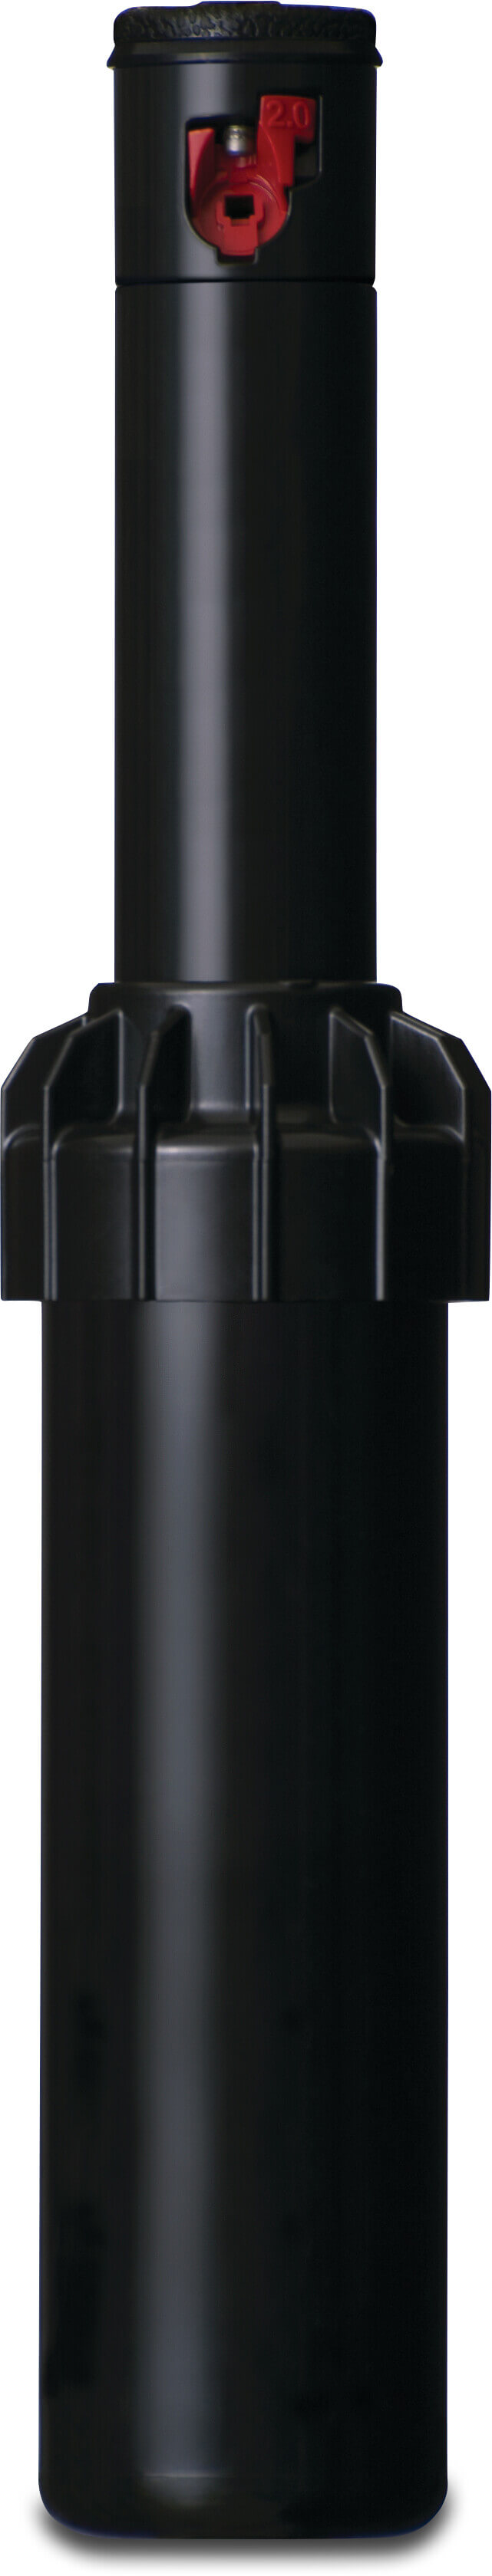 Hunter Pop-up sprinkler plastic 1/2" female thread 40°-360° black type PGJ-04